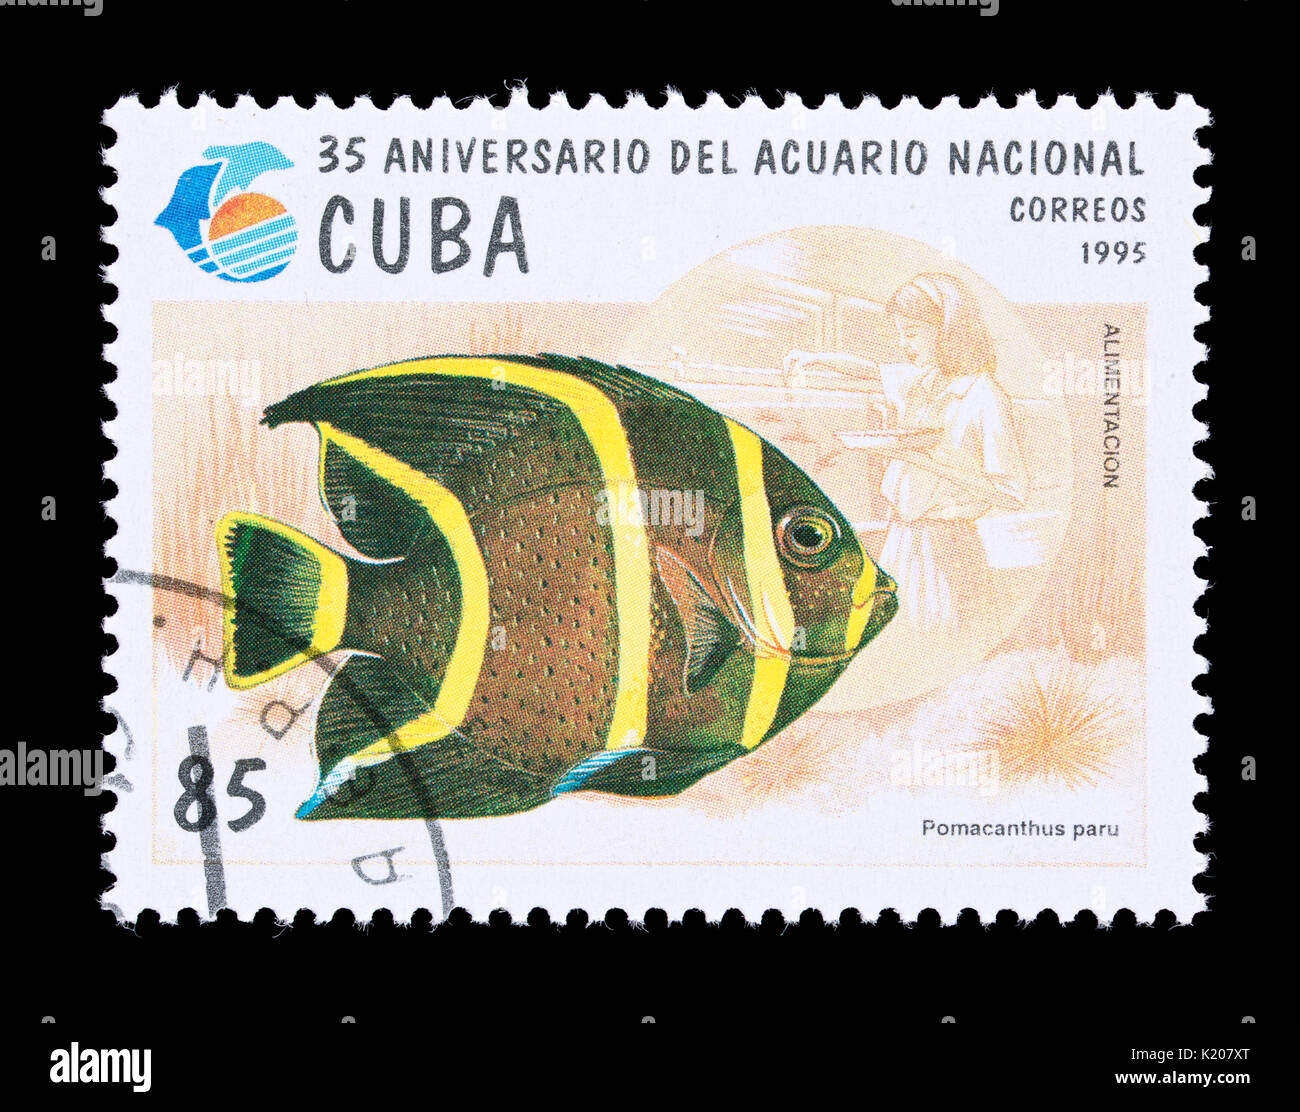 Sello de Cuba representando un pez ángel francés (Pomacanthus paru), 35'aniversario del Acuario Nacional Foto de stock